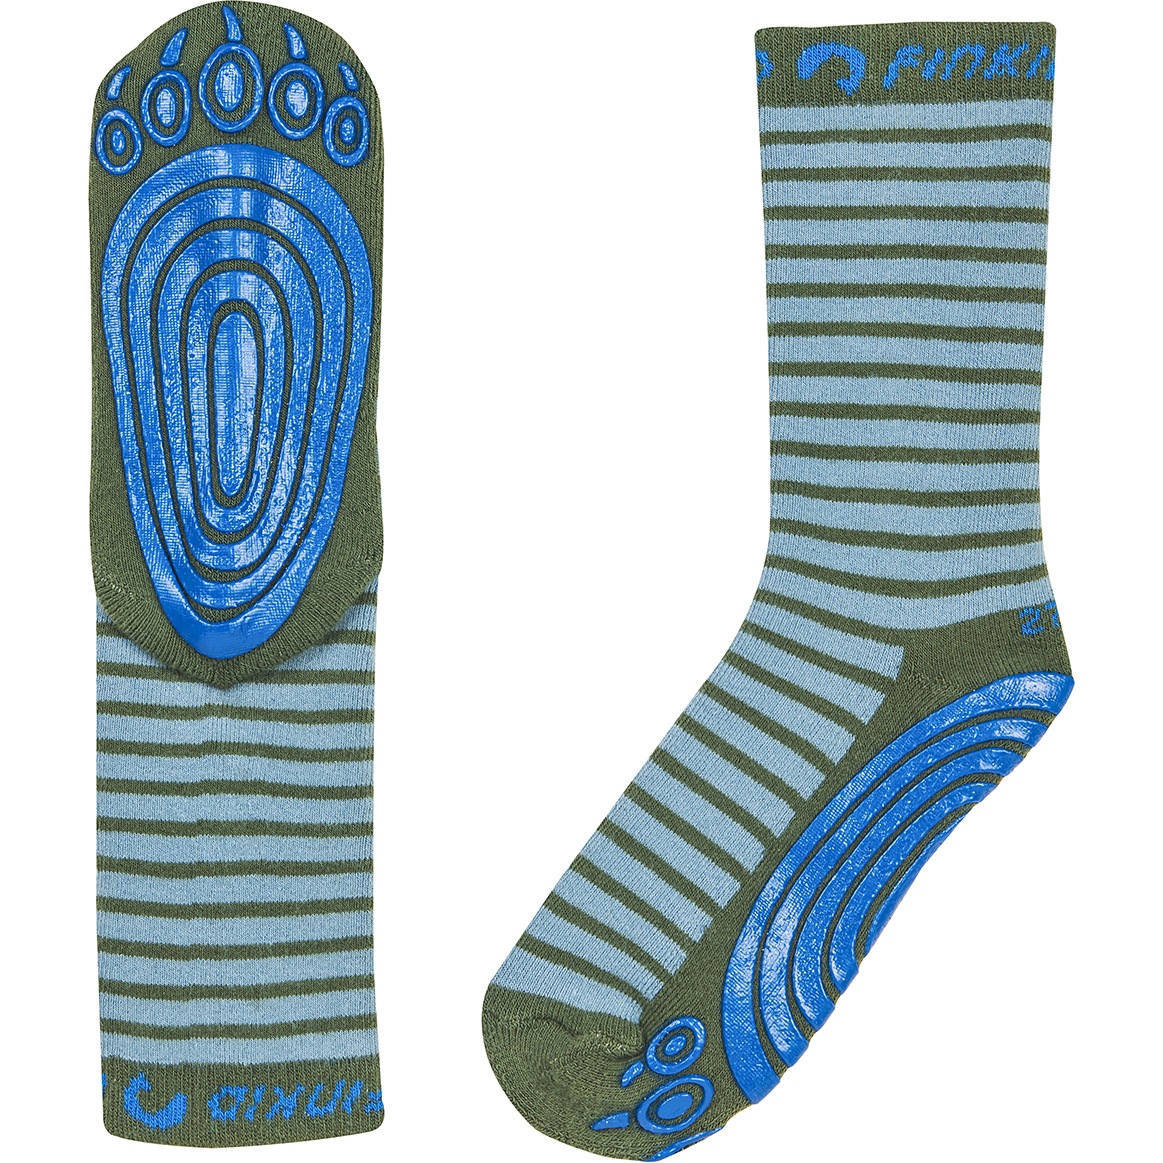 Produktbild von Finkid TAPSUT Socken Kinder - smoke blue/bronze green